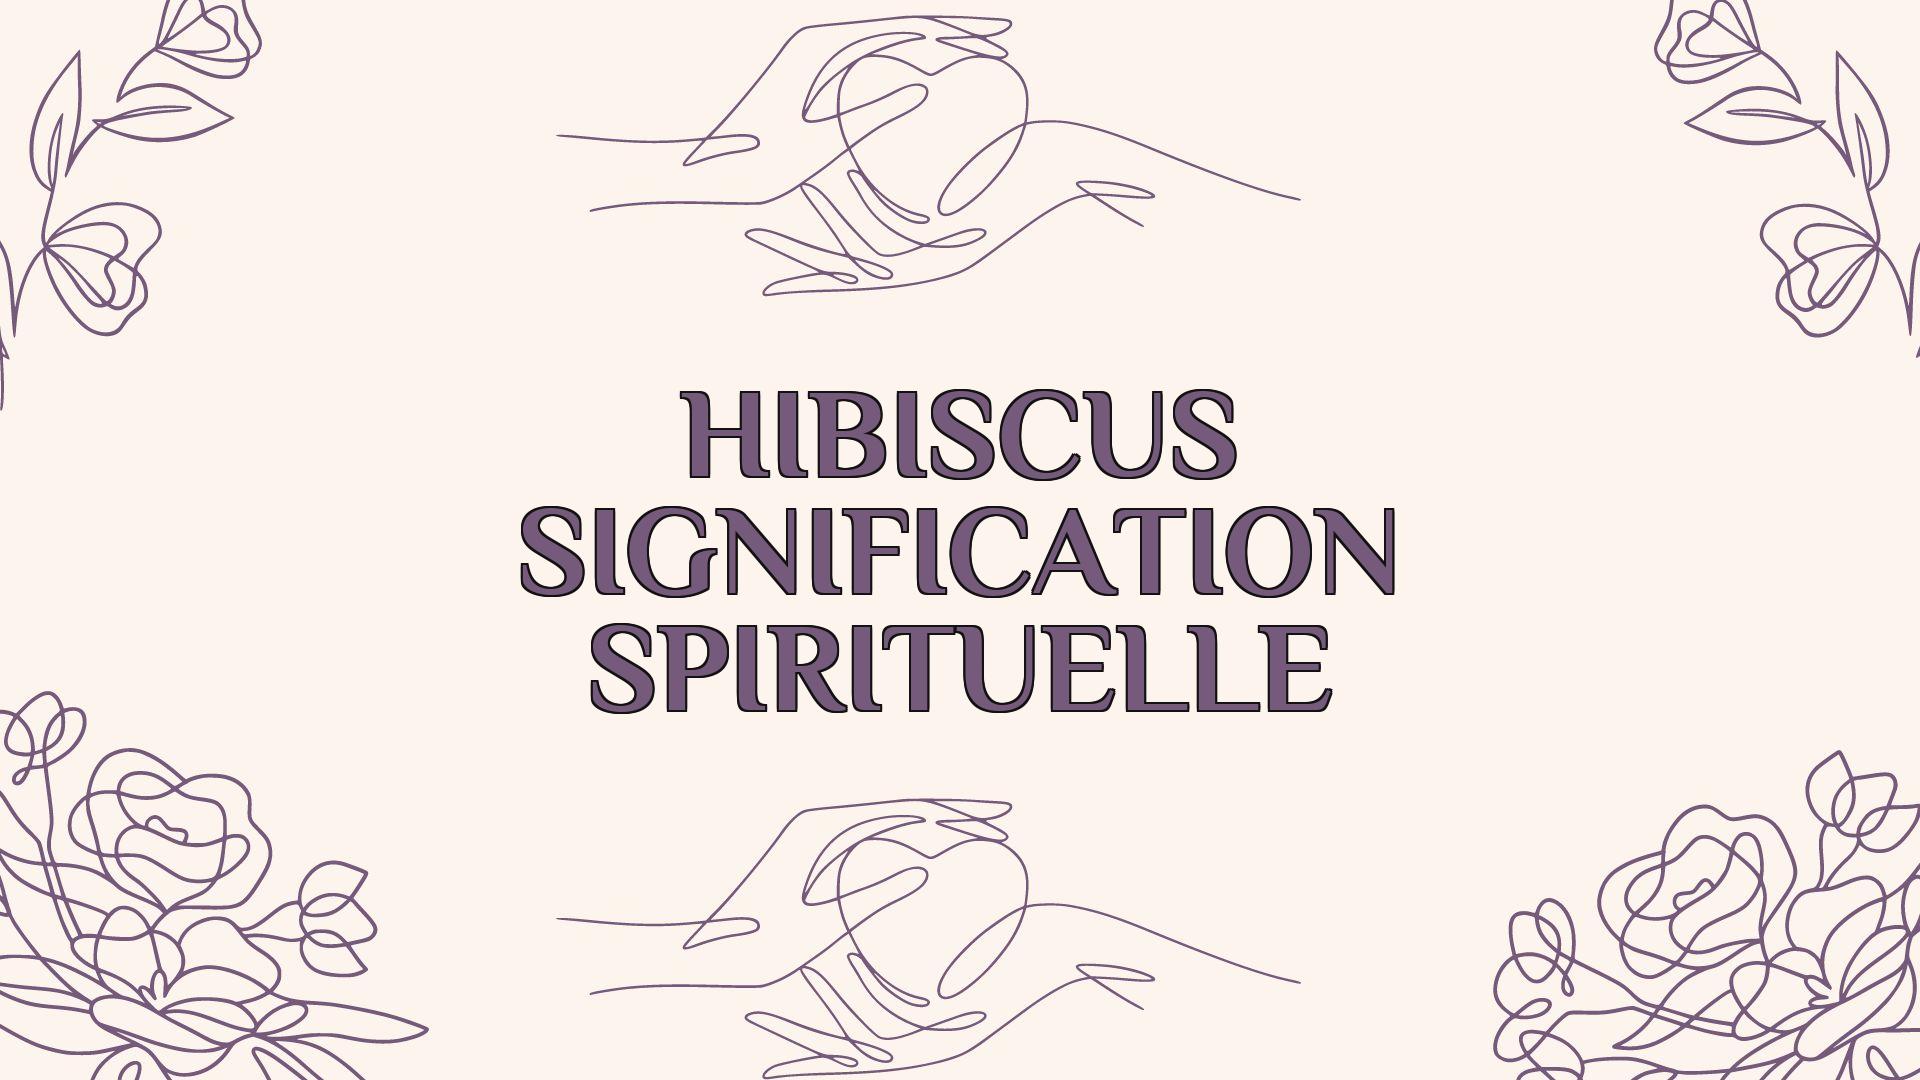 hibiscus signification spirituelle 2